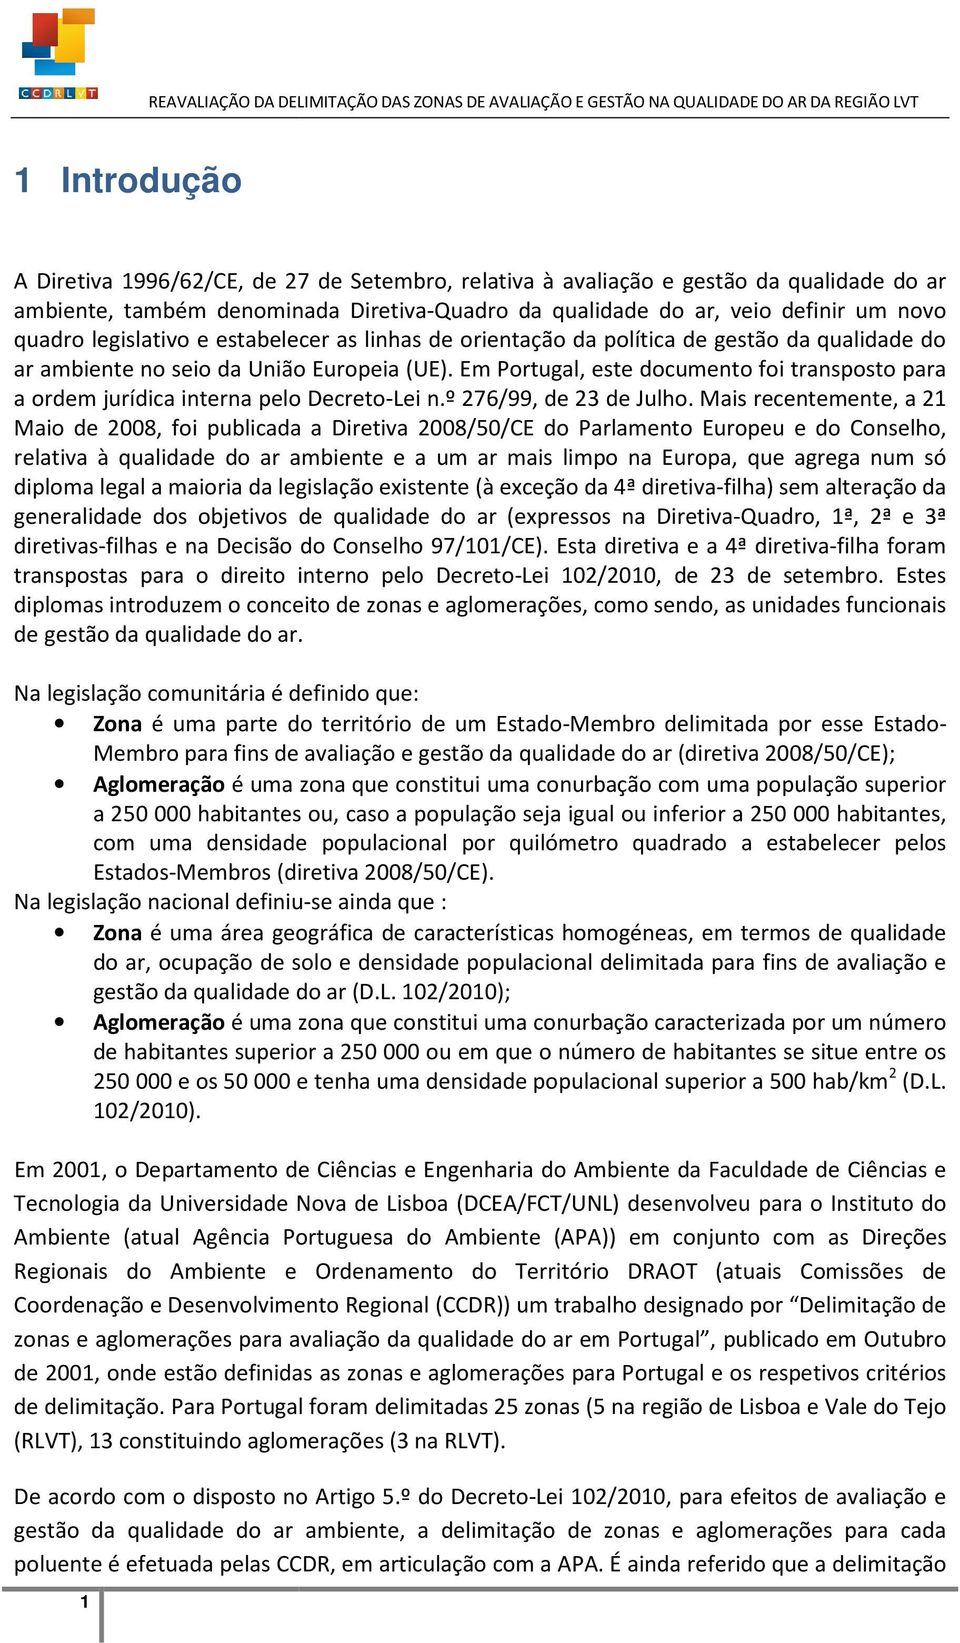 Em Portugal, este documento foi transposto para a ordem jurídica interna pelo Decreto-Lei n.º 276/99, de 23 de Julho.